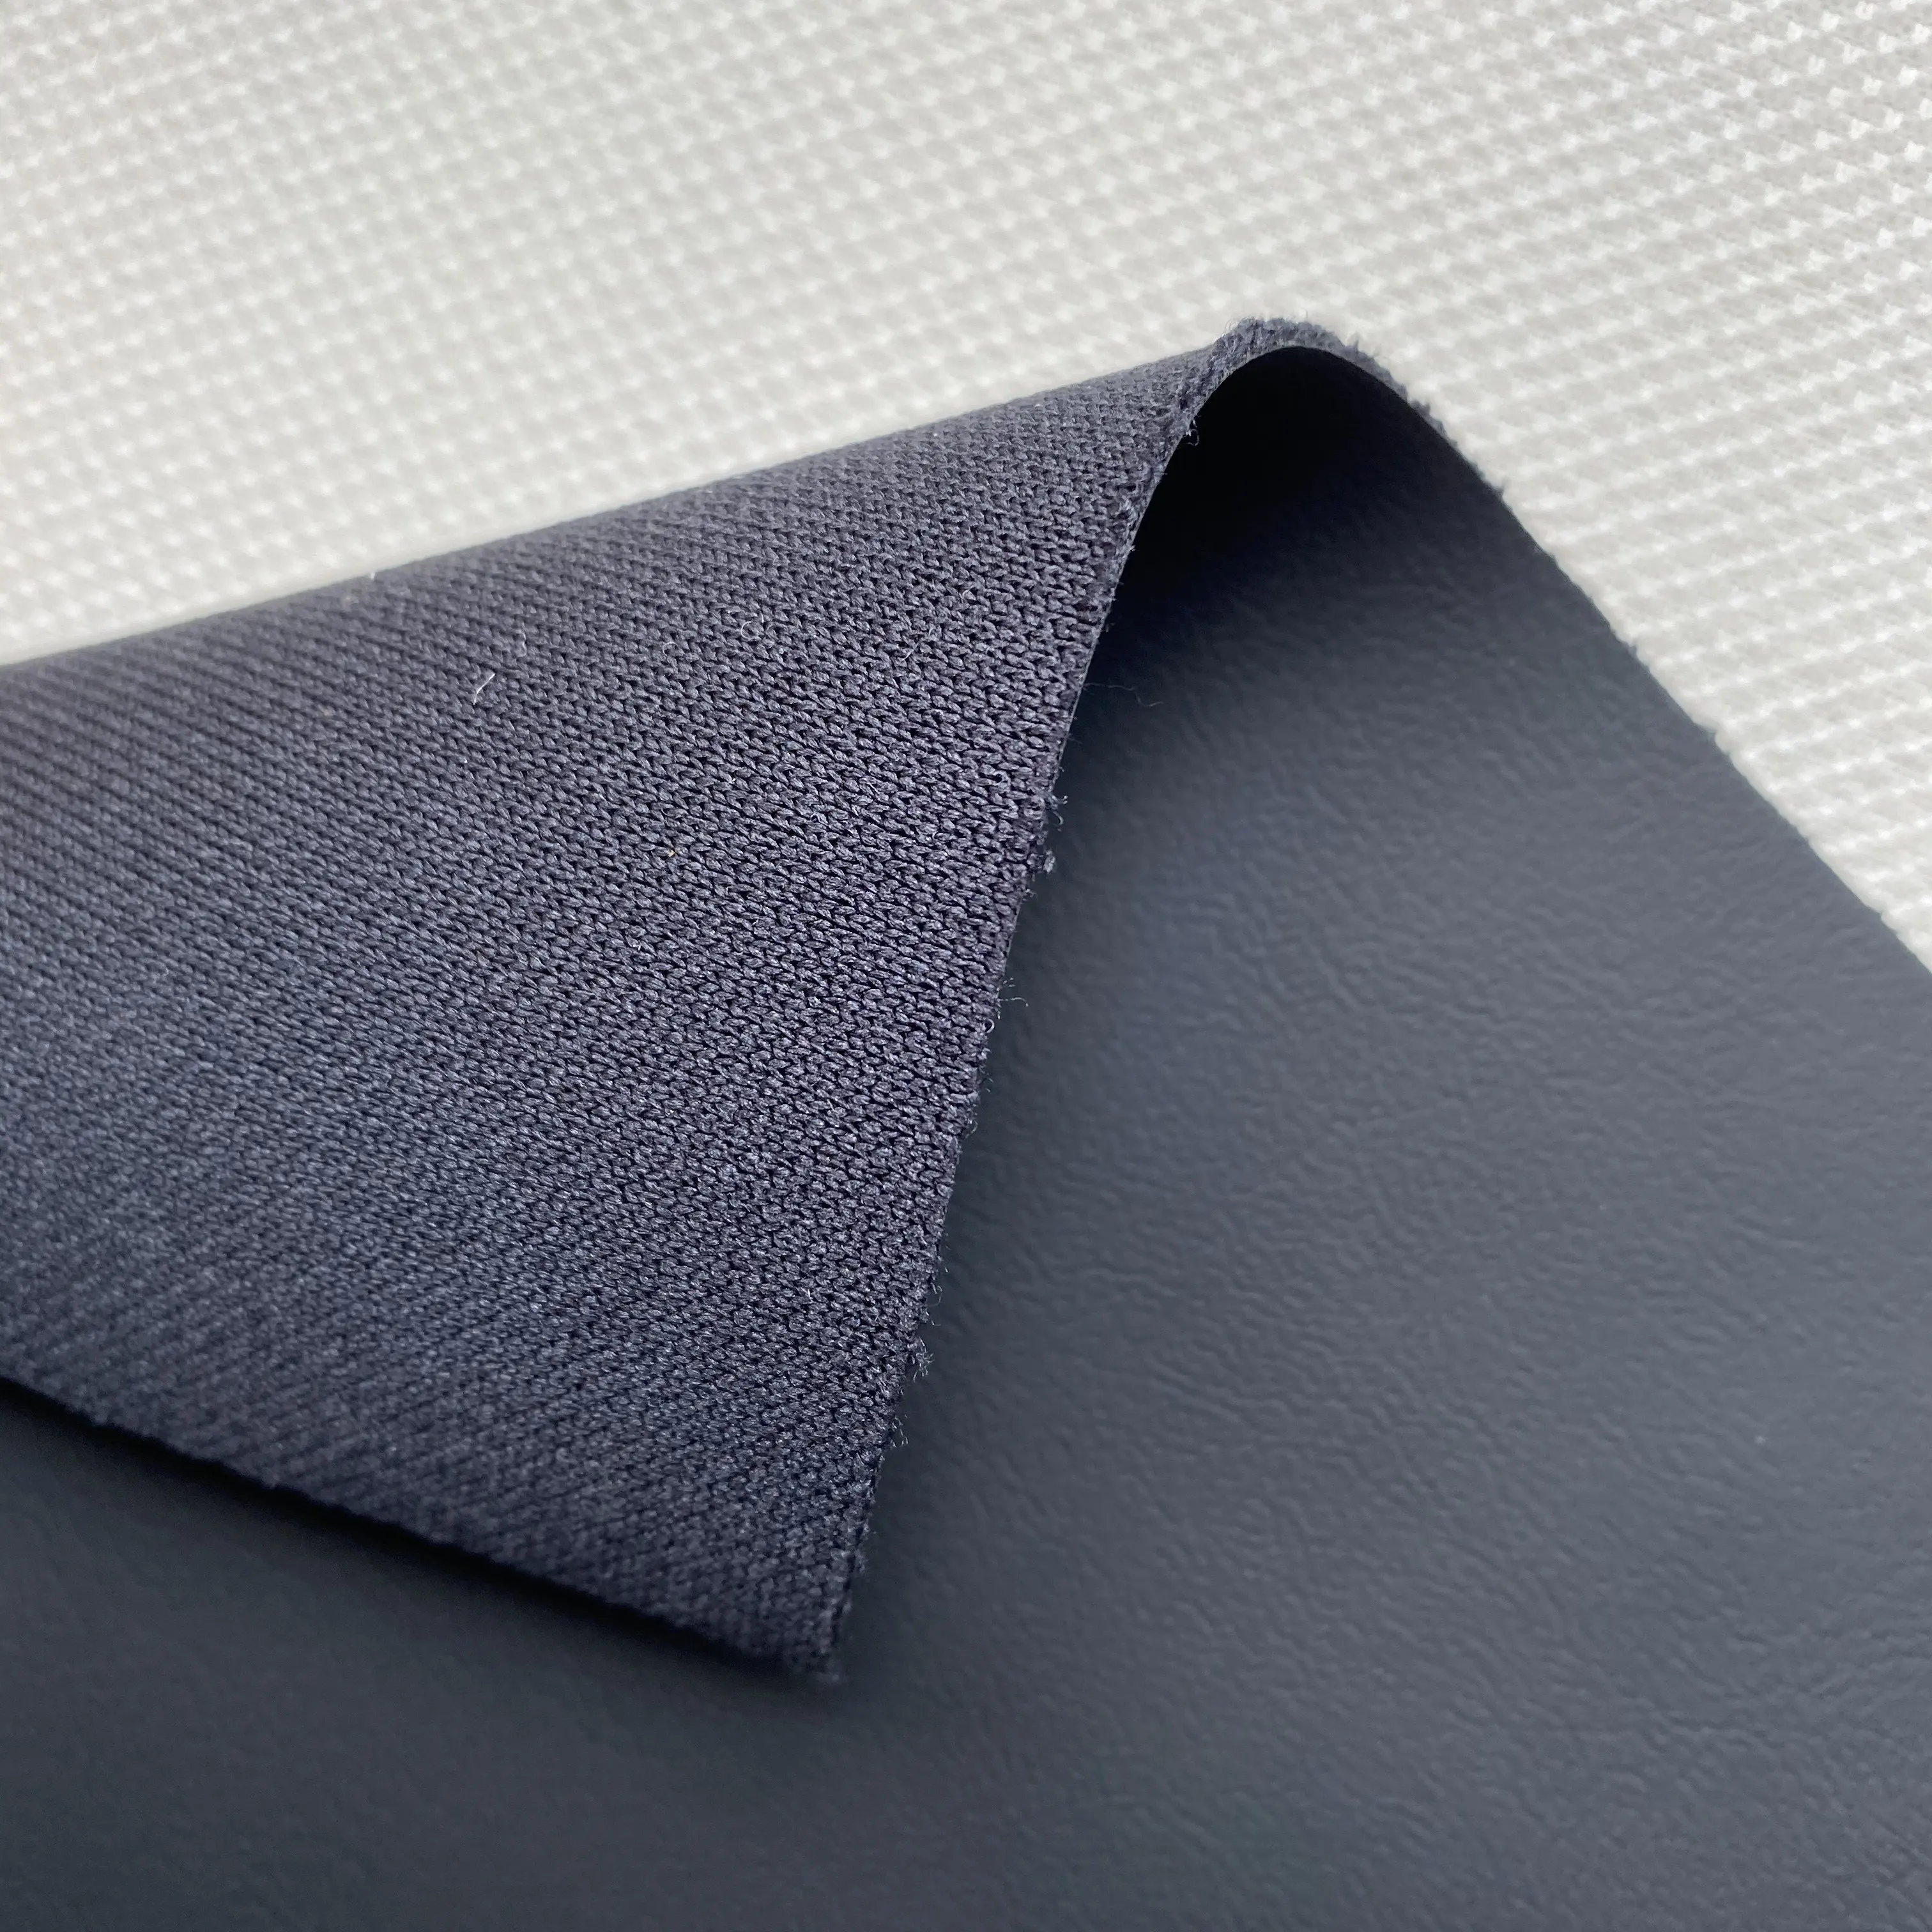 원래 품질 만 검은 색 사용할 수있는 pvc 가죽 테슬라 자동차 좌석 일본